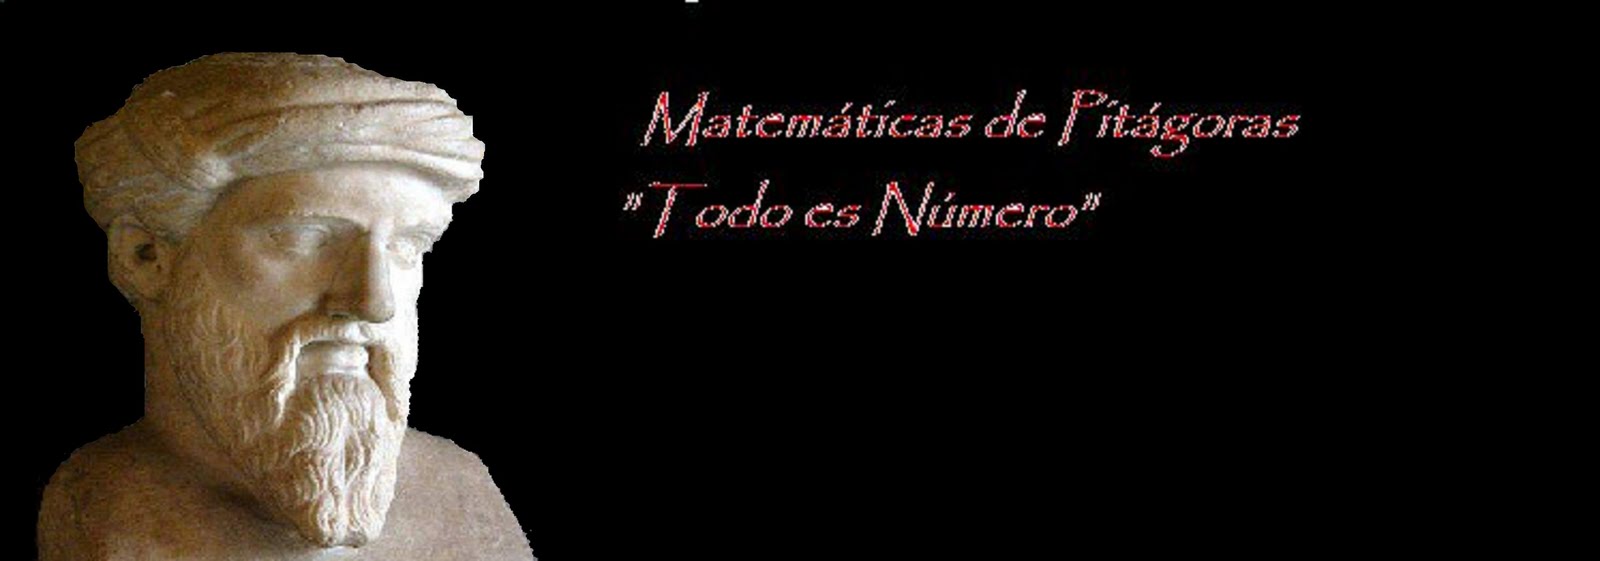 Matemáticas de Pitágoras...